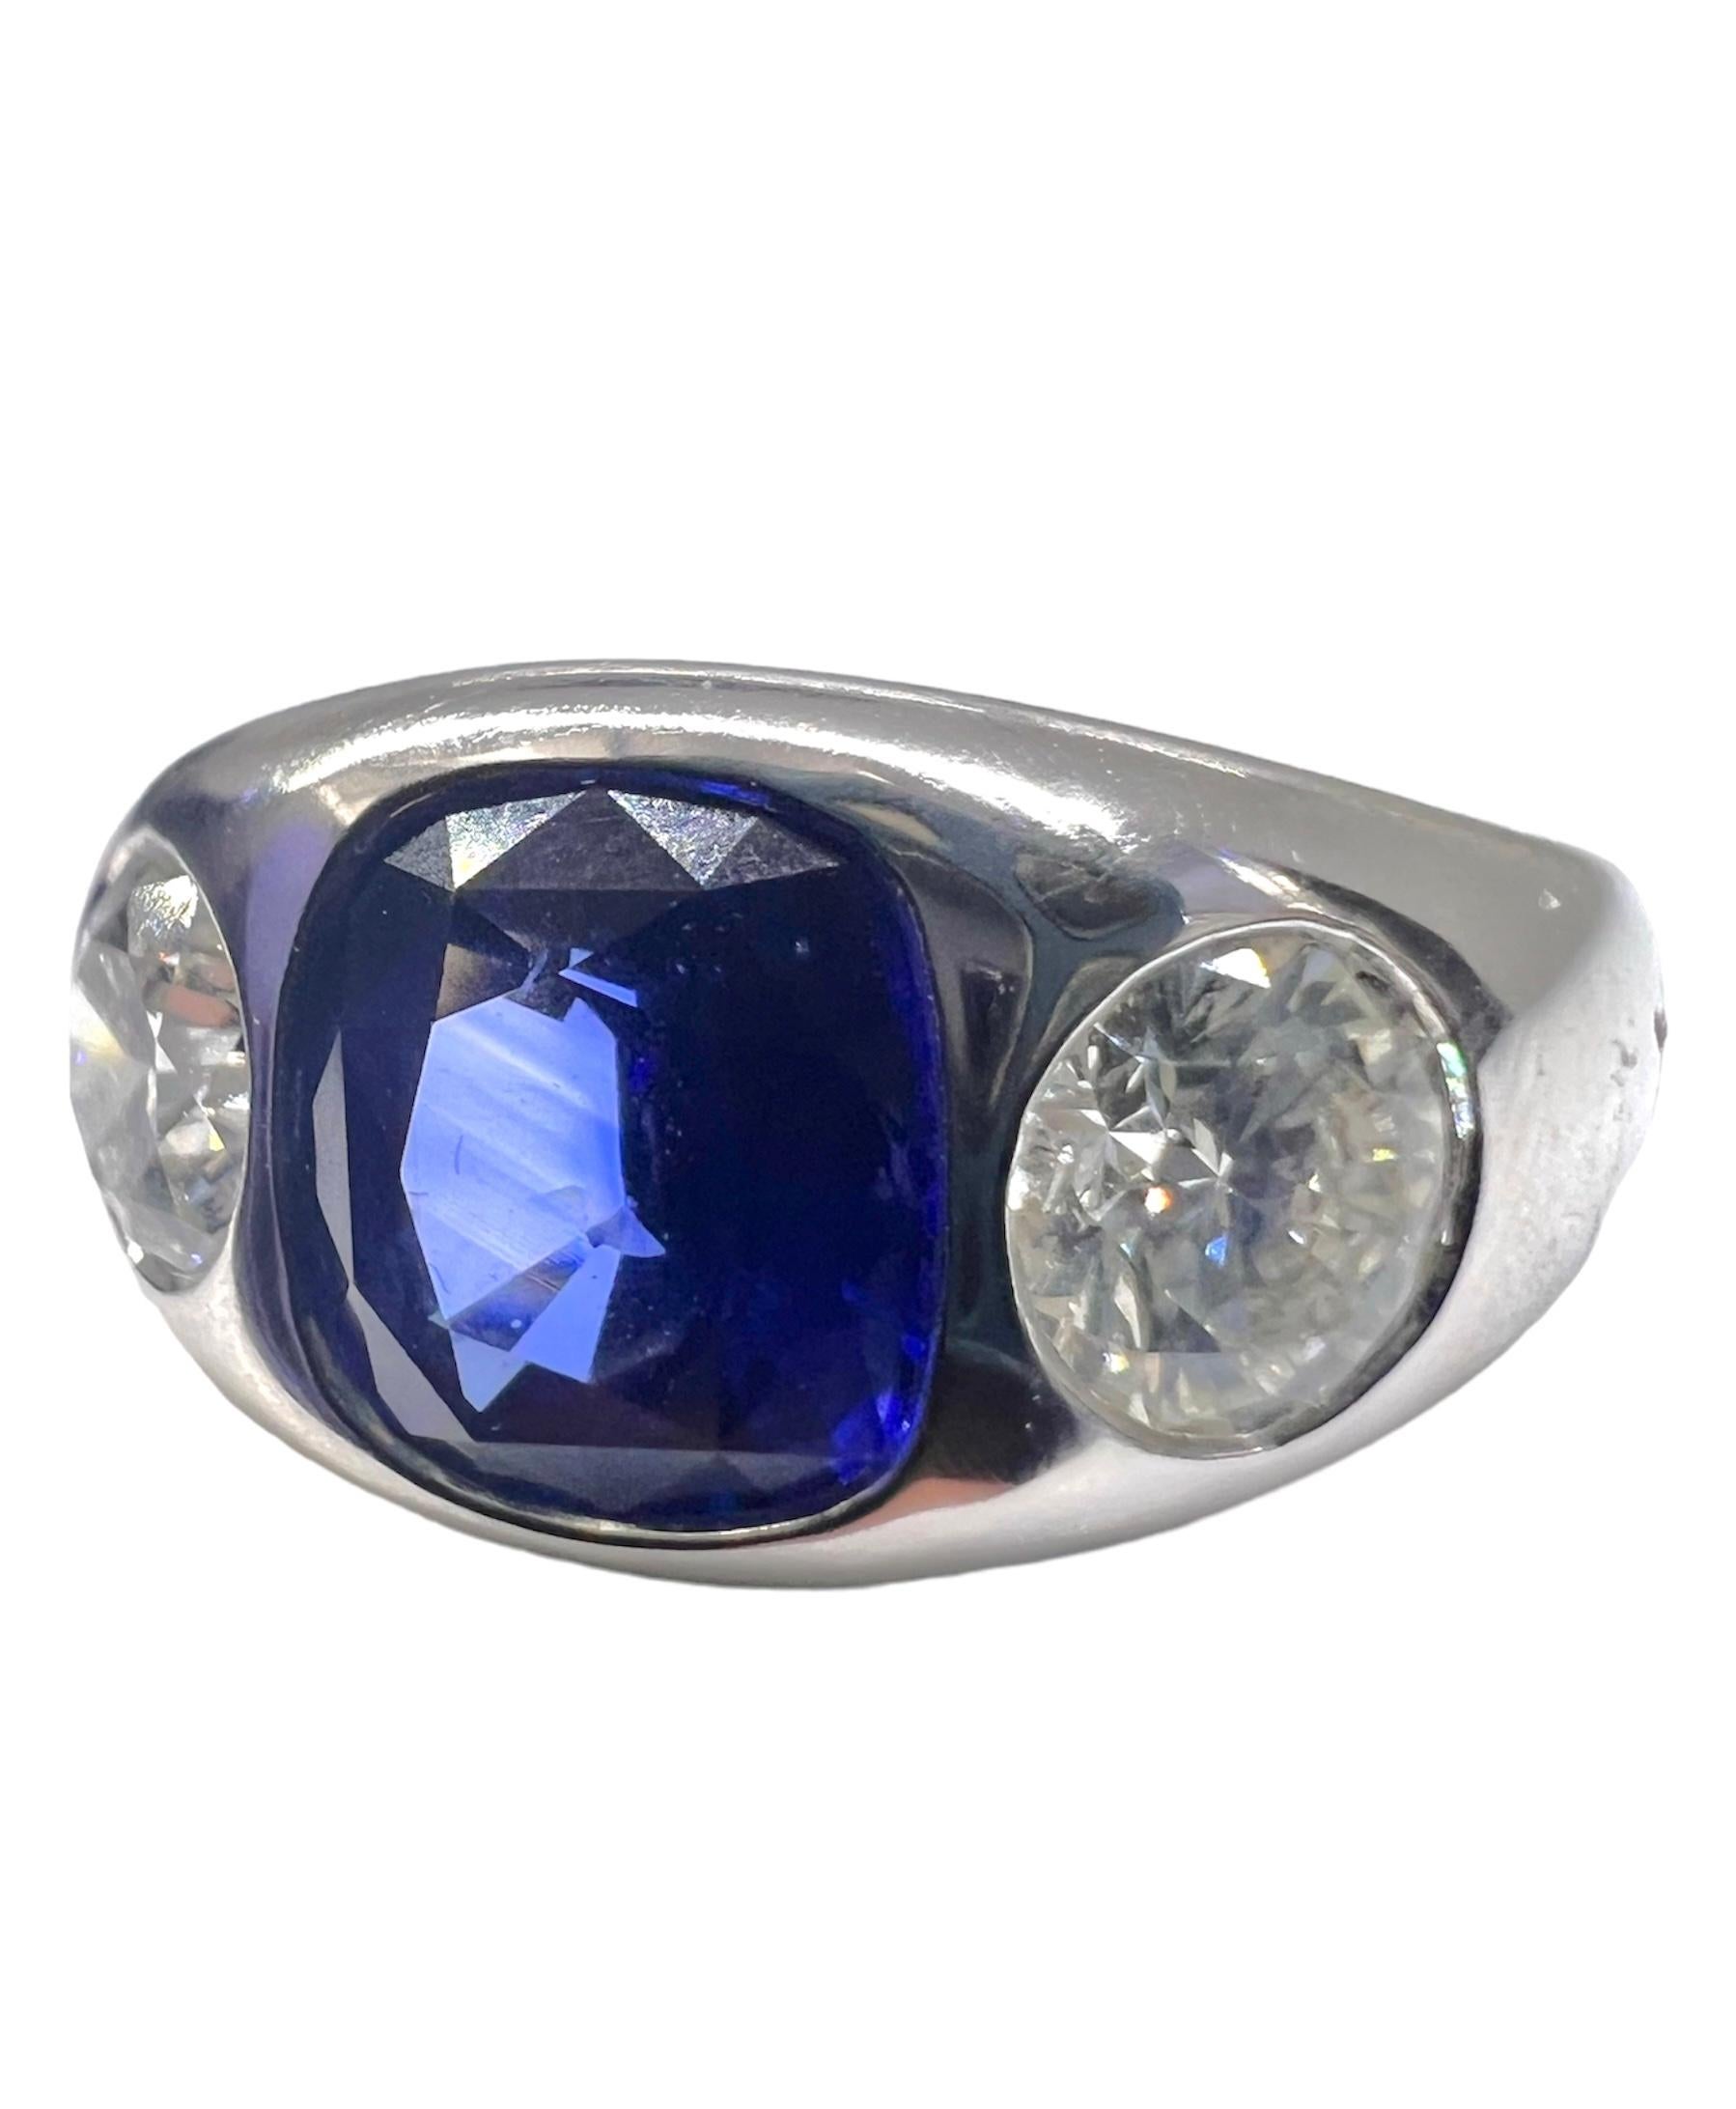 Bague gitane à trois pierres avec un diamant rond certifié GIA pesant 0,53 carat et 0,51 carat et un saphir bleu de taille coussin pesant 2,12 carats sertis dans du platine.

Sophia D by Joseph Dardashti Ltd est connue dans le monde entier depuis 35